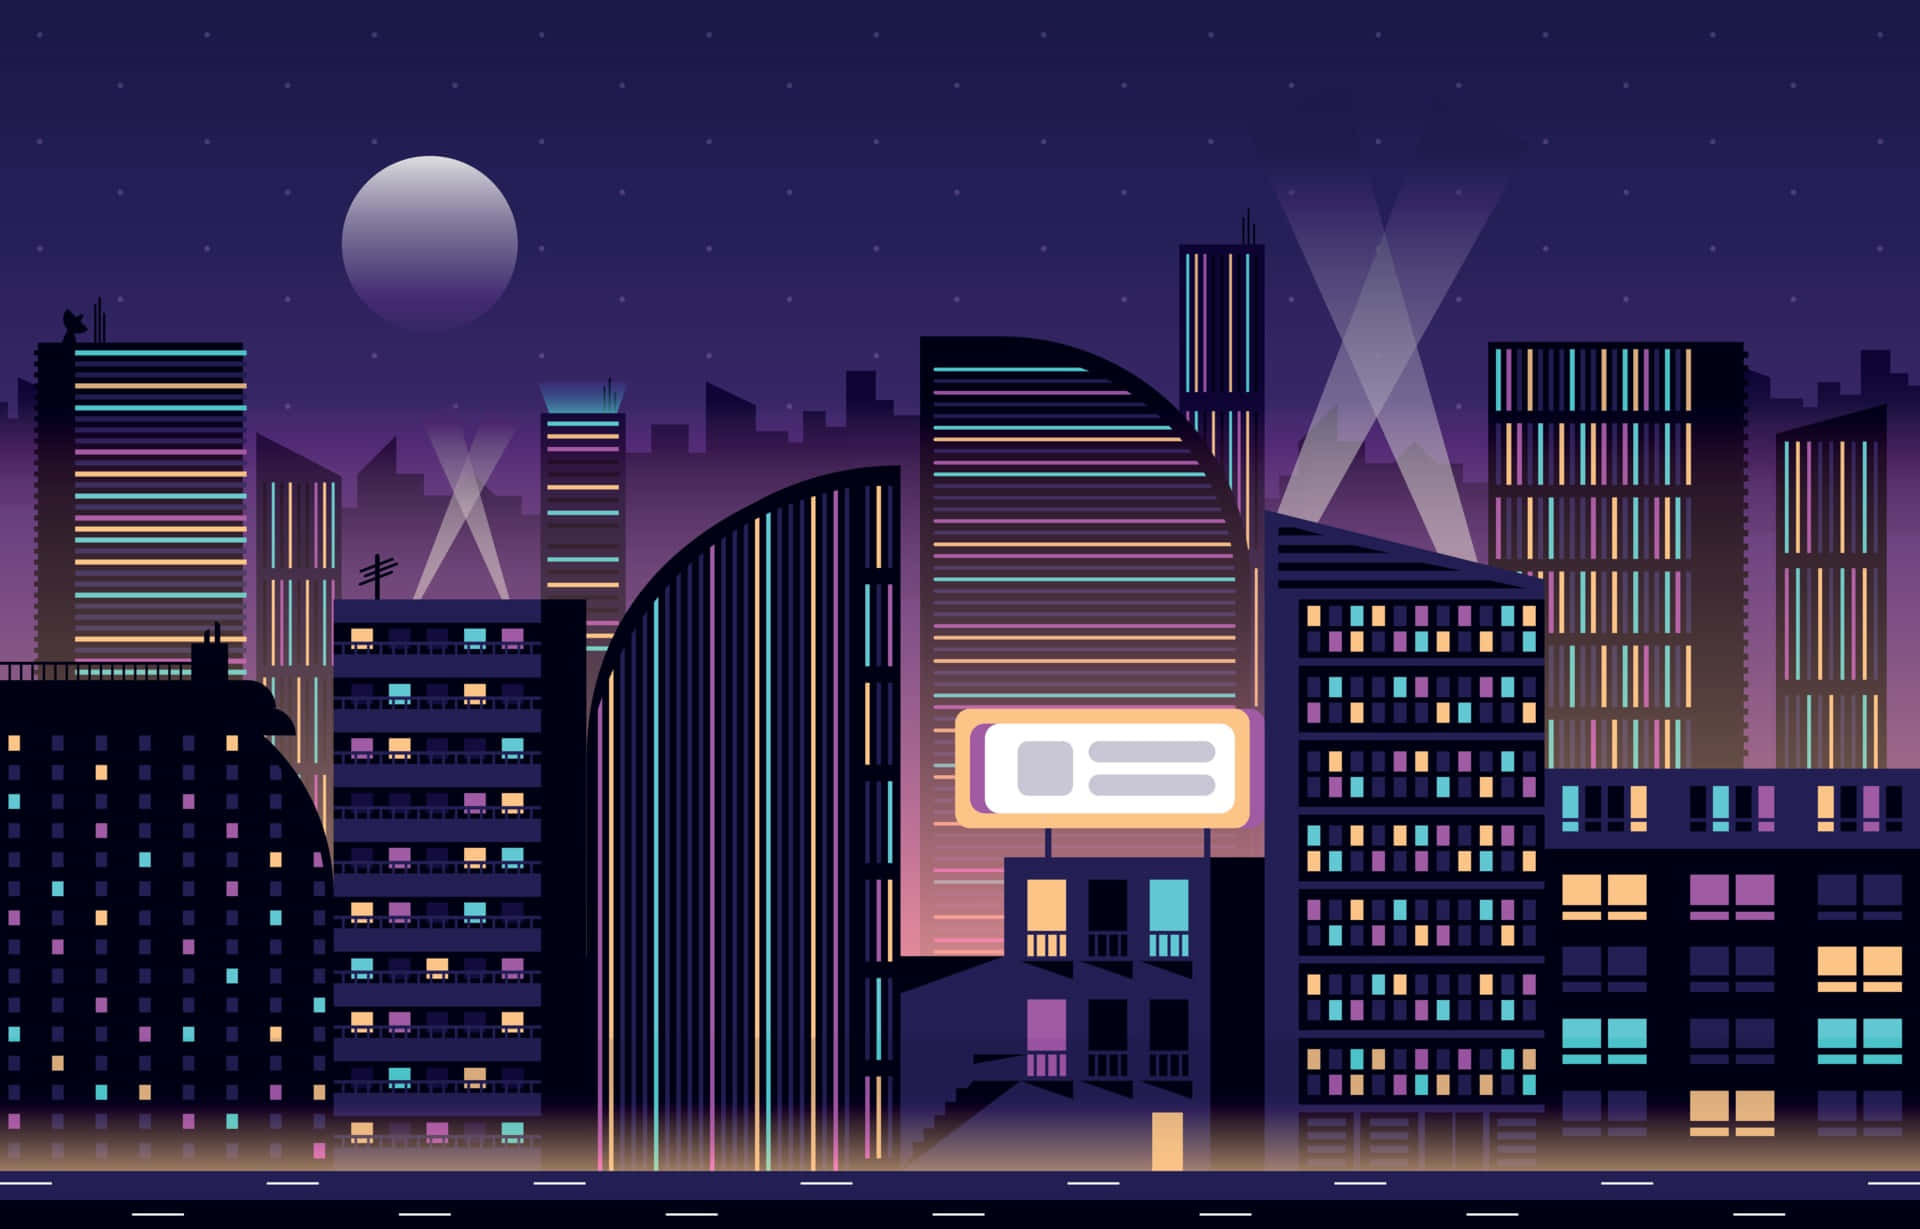 En bylandskab om natten med bygninger og en måne på himlen